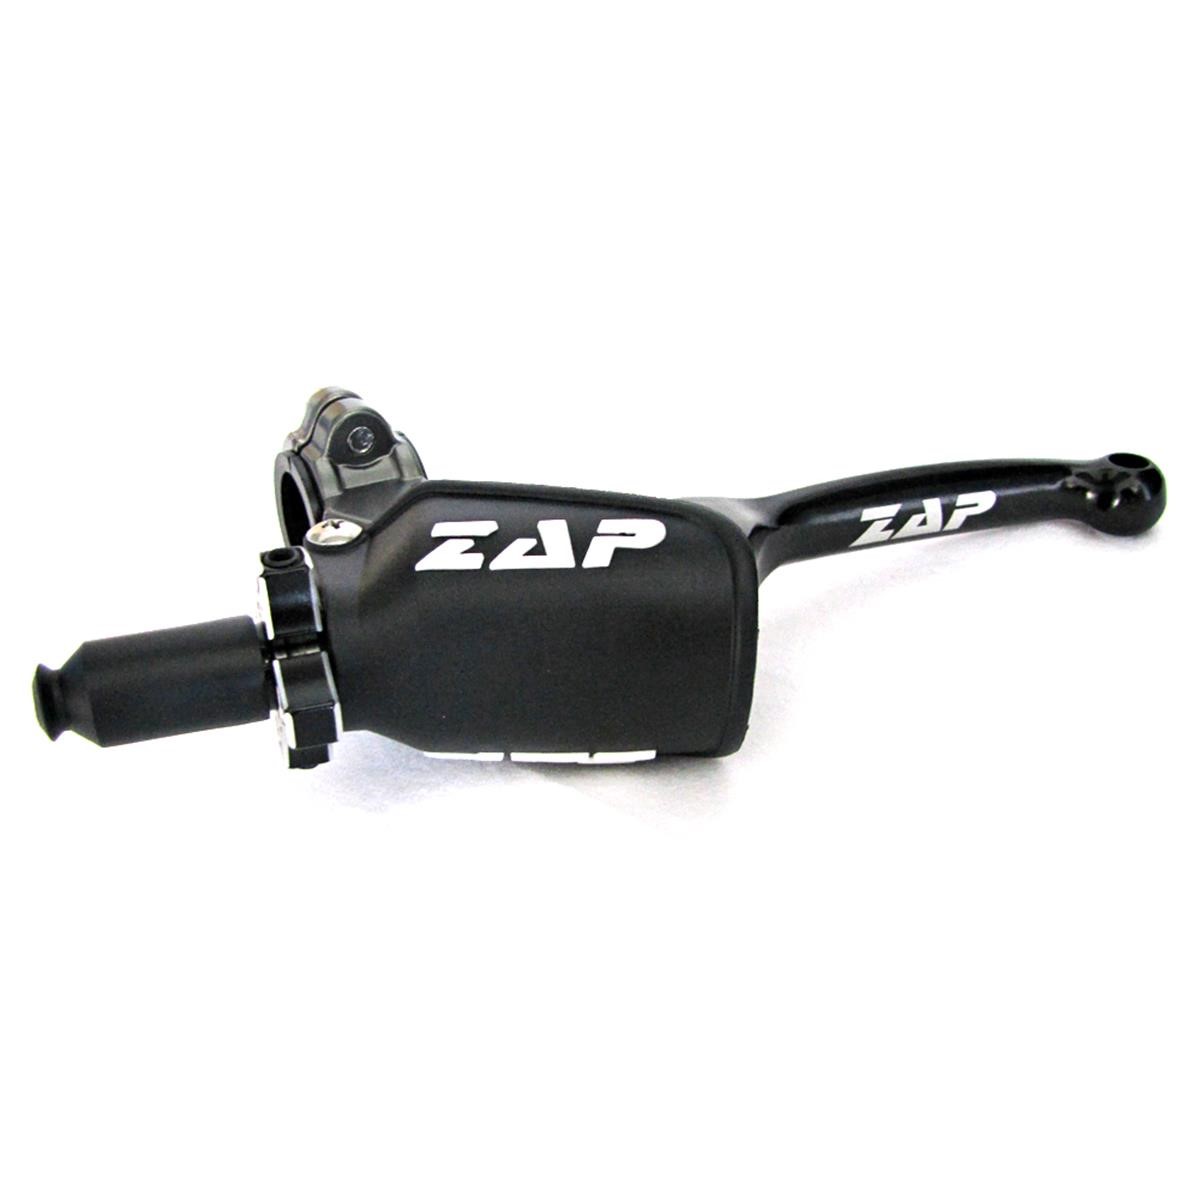 ZAP Kupplungsarmatur V.2X mit Klapphebel, schwarz - limited edition